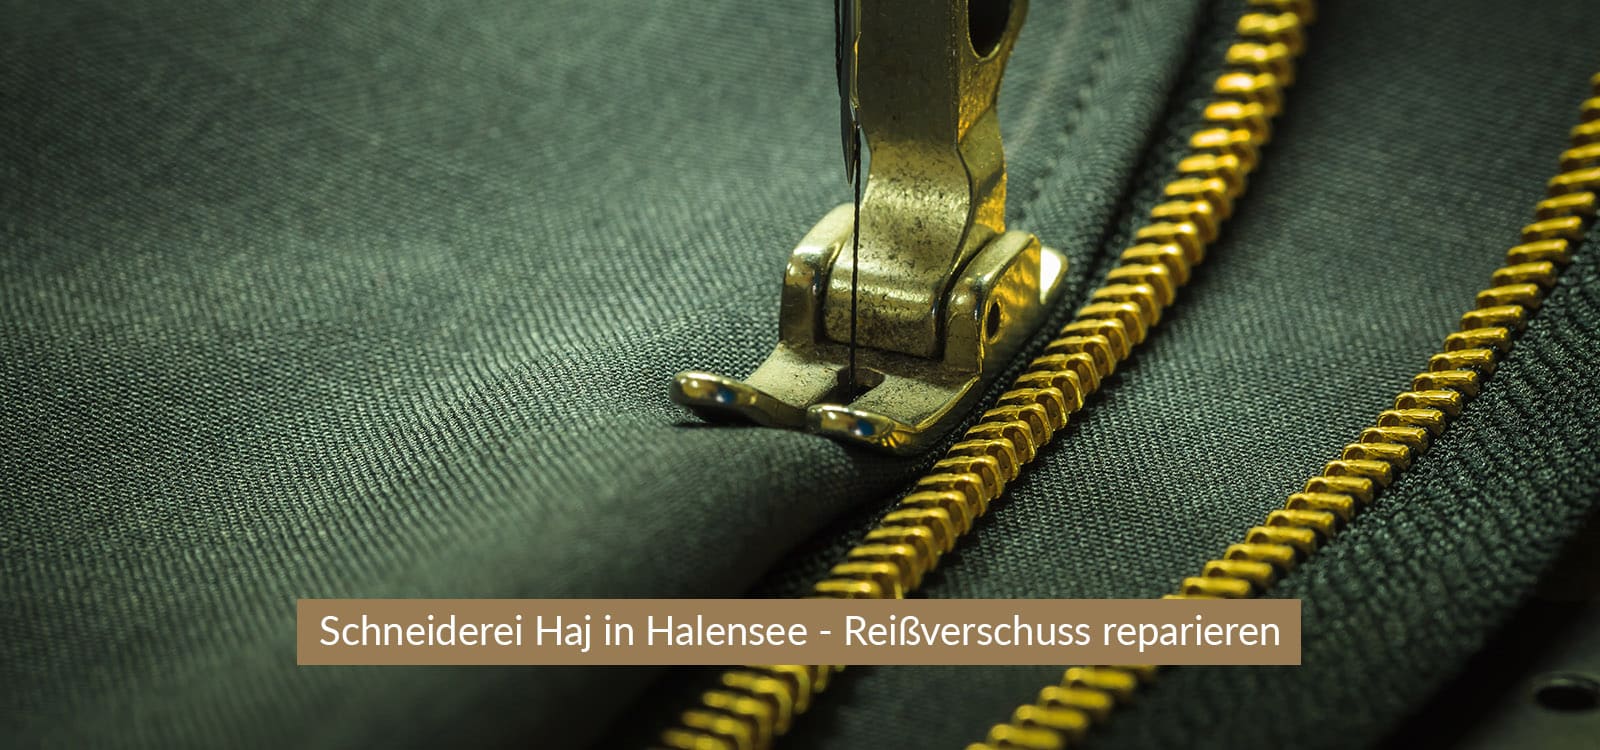 schneiderei-halensee-header-desktop-1600x750-reissverschluss-reparieren